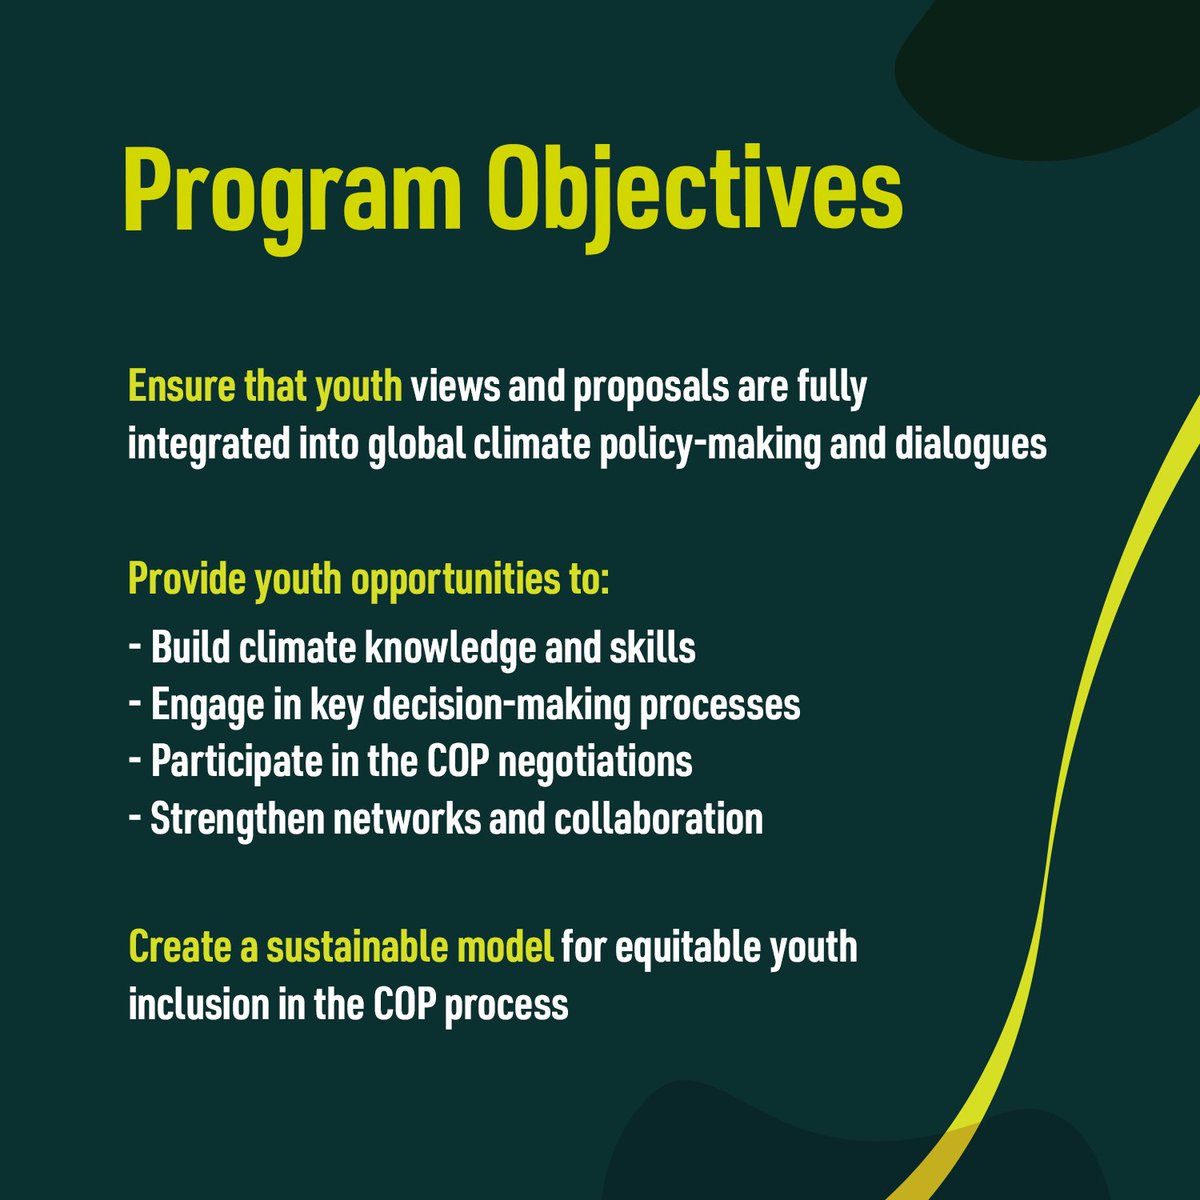 سيتيح برنامج مندوبي الشباب الدولي للمناخ الذي أطلقه مؤتمر الأطراف COP28 بالإمارات بالتعاون مع شبكة YOUNGO، الفرصة لـ 100 شاب للمشاركة في عملية التفاوض بشأن سياسات المناخ الدولية، مع إعطاء الأولوية لمندوبي الدول الأقل نمواً، والدول الجُزرية النامية. #YouthClimateDelegate